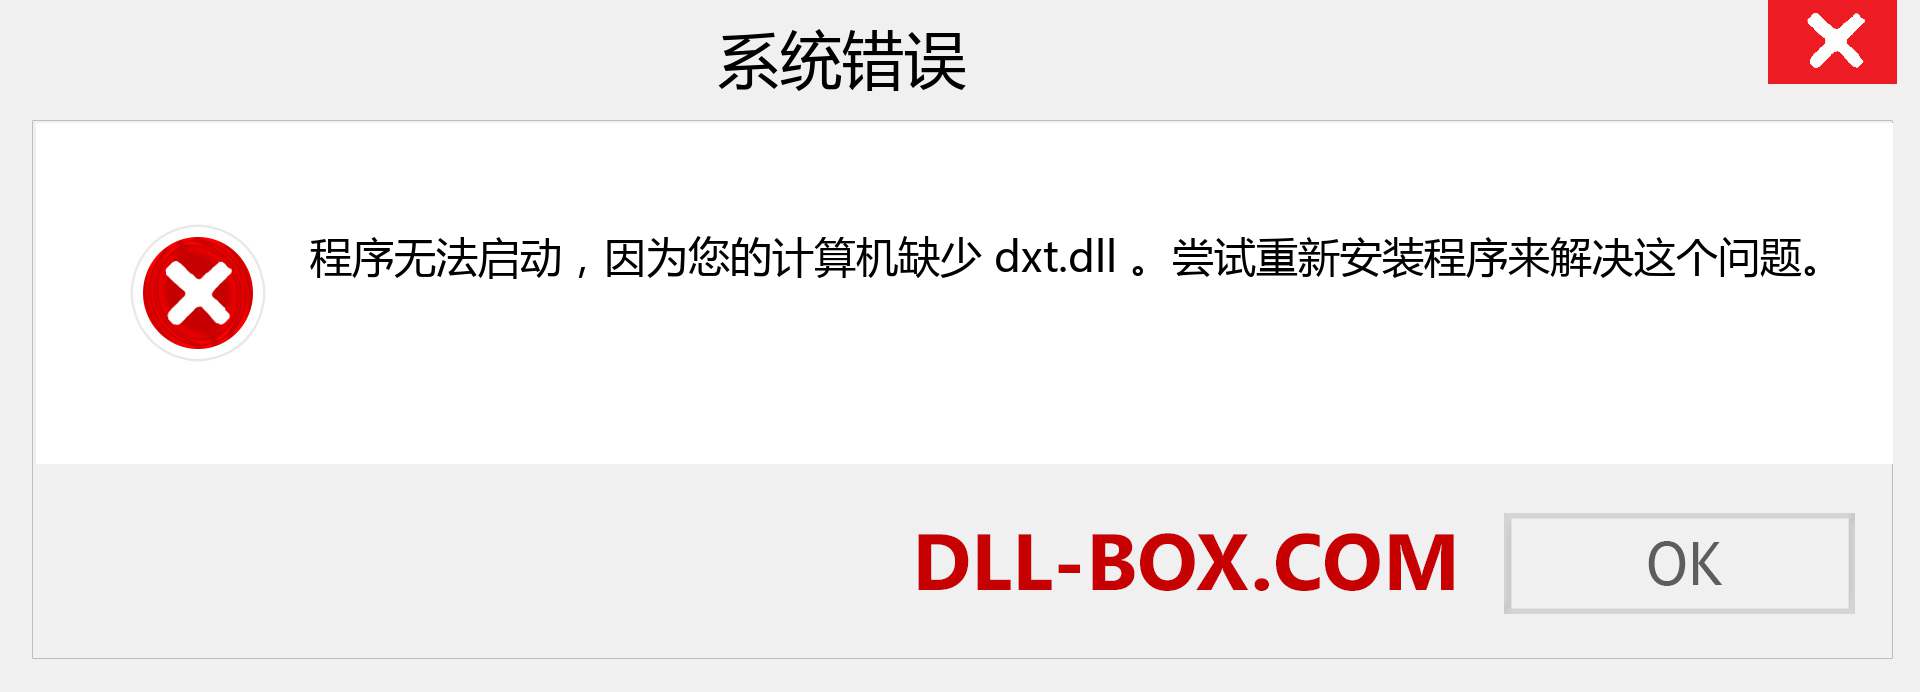 dxt.dll 文件丢失？。 适用于 Windows 7、8、10 的下载 - 修复 Windows、照片、图像上的 dxt dll 丢失错误